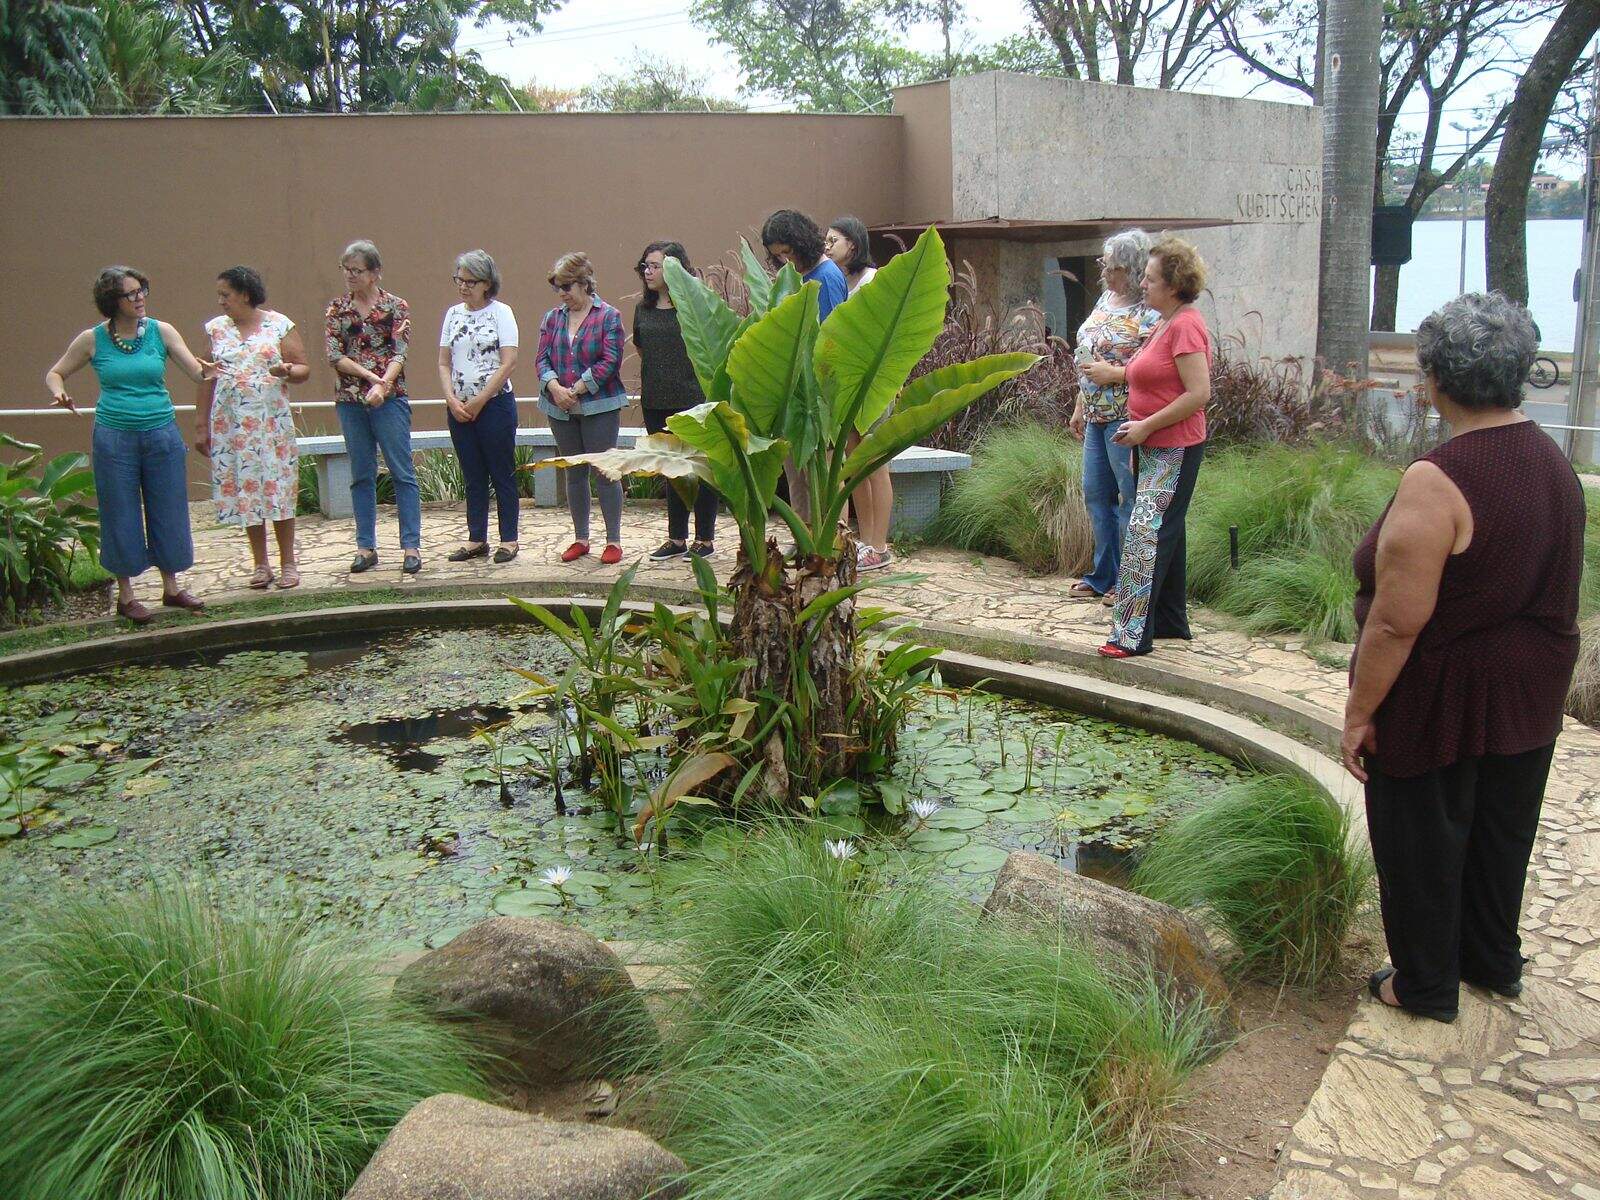 Grupo de pessoas observam um jardim. Na imagem as pessoas estão posicionadas ao redor de um pequeno lago no jardim da MCK. É possível notar plantas verdes ao redor.